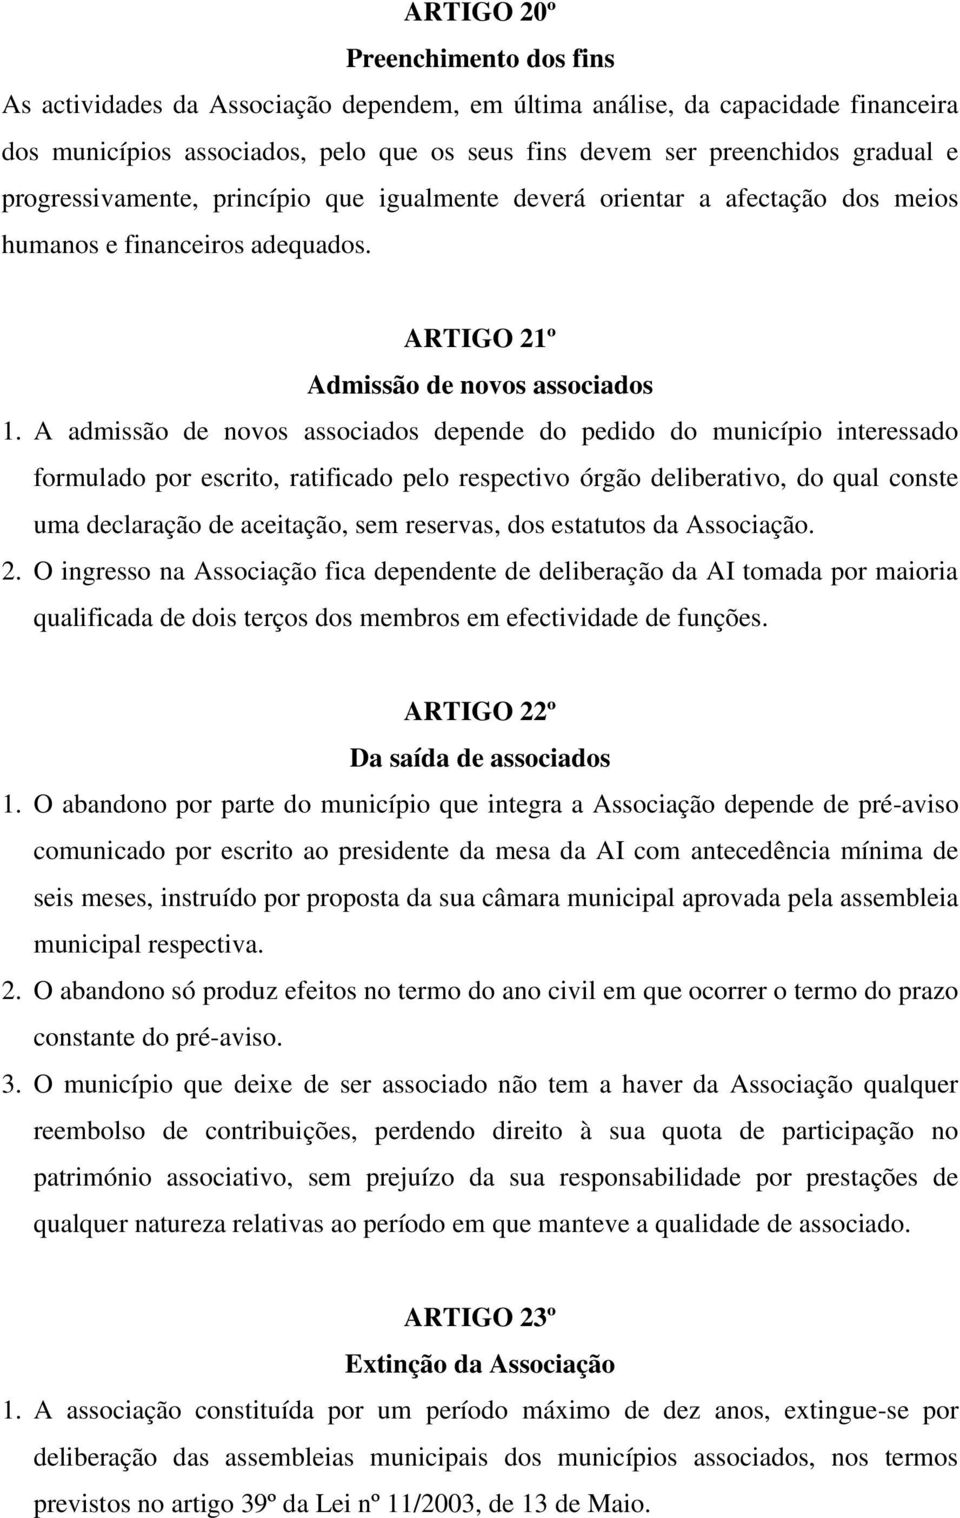 A admissão de novos associados depende do pedido do município interessado formulado por escrito, ratificado pelo respectivo órgão deliberativo, do qual conste uma declaração de aceitação, sem